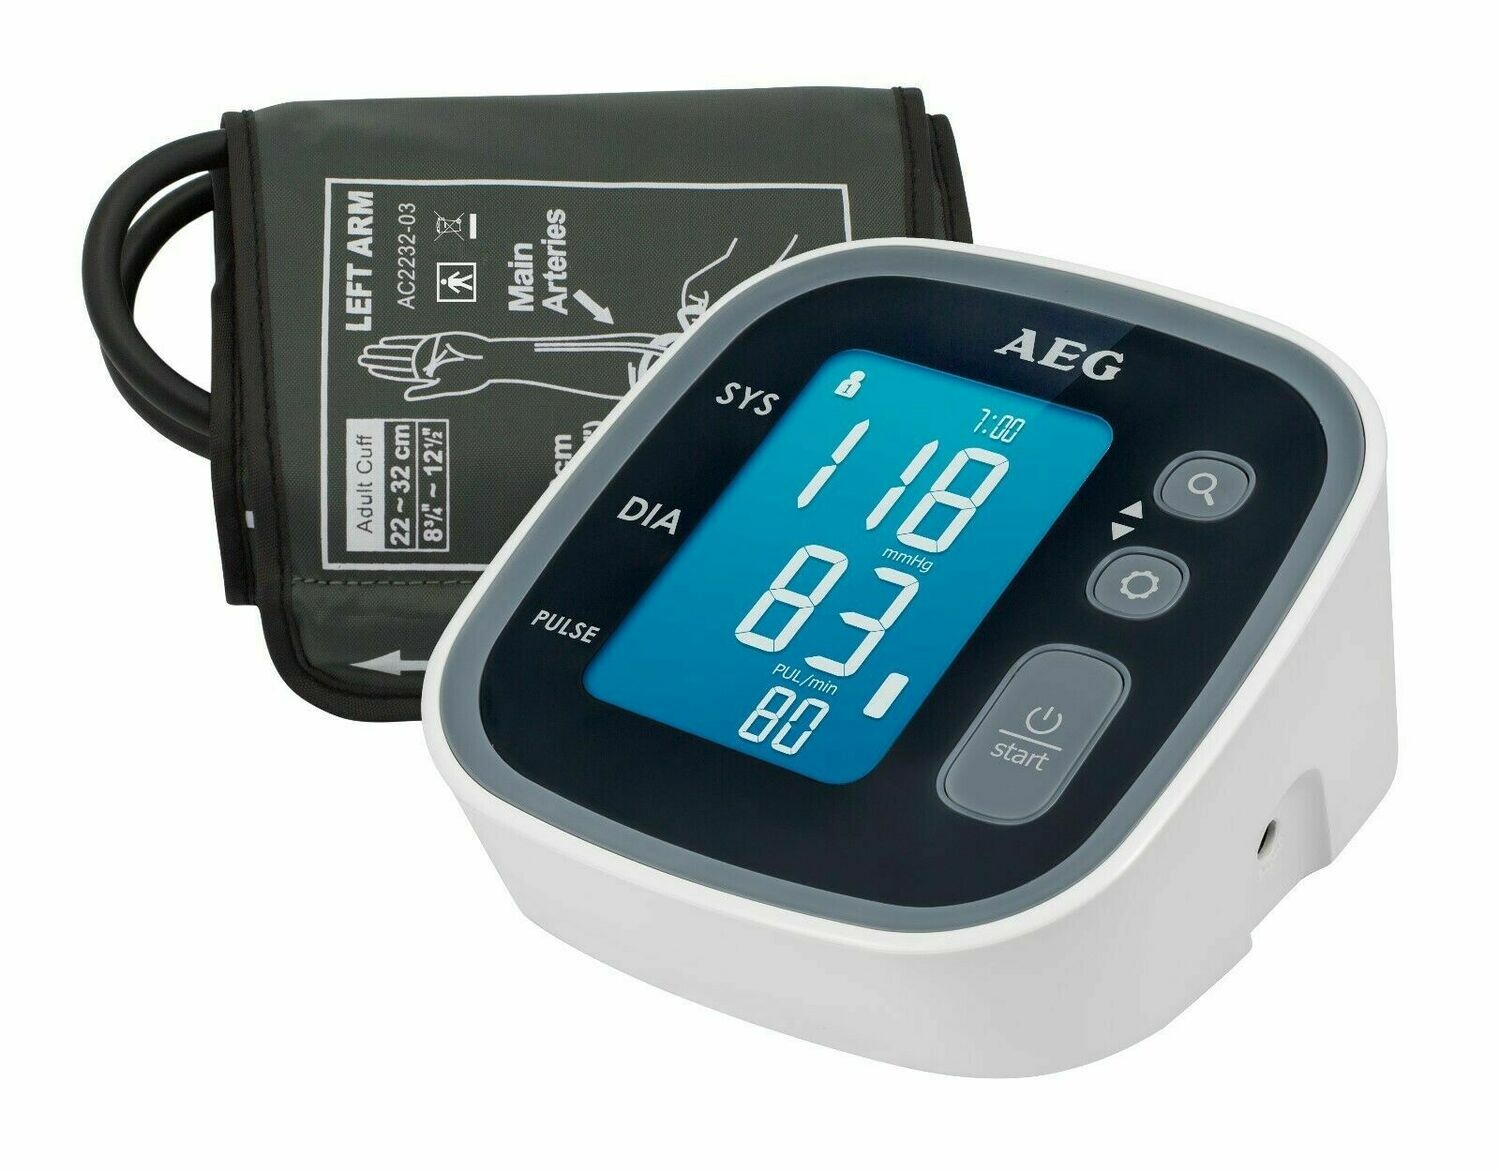 AEG Blood Pressure Monitor